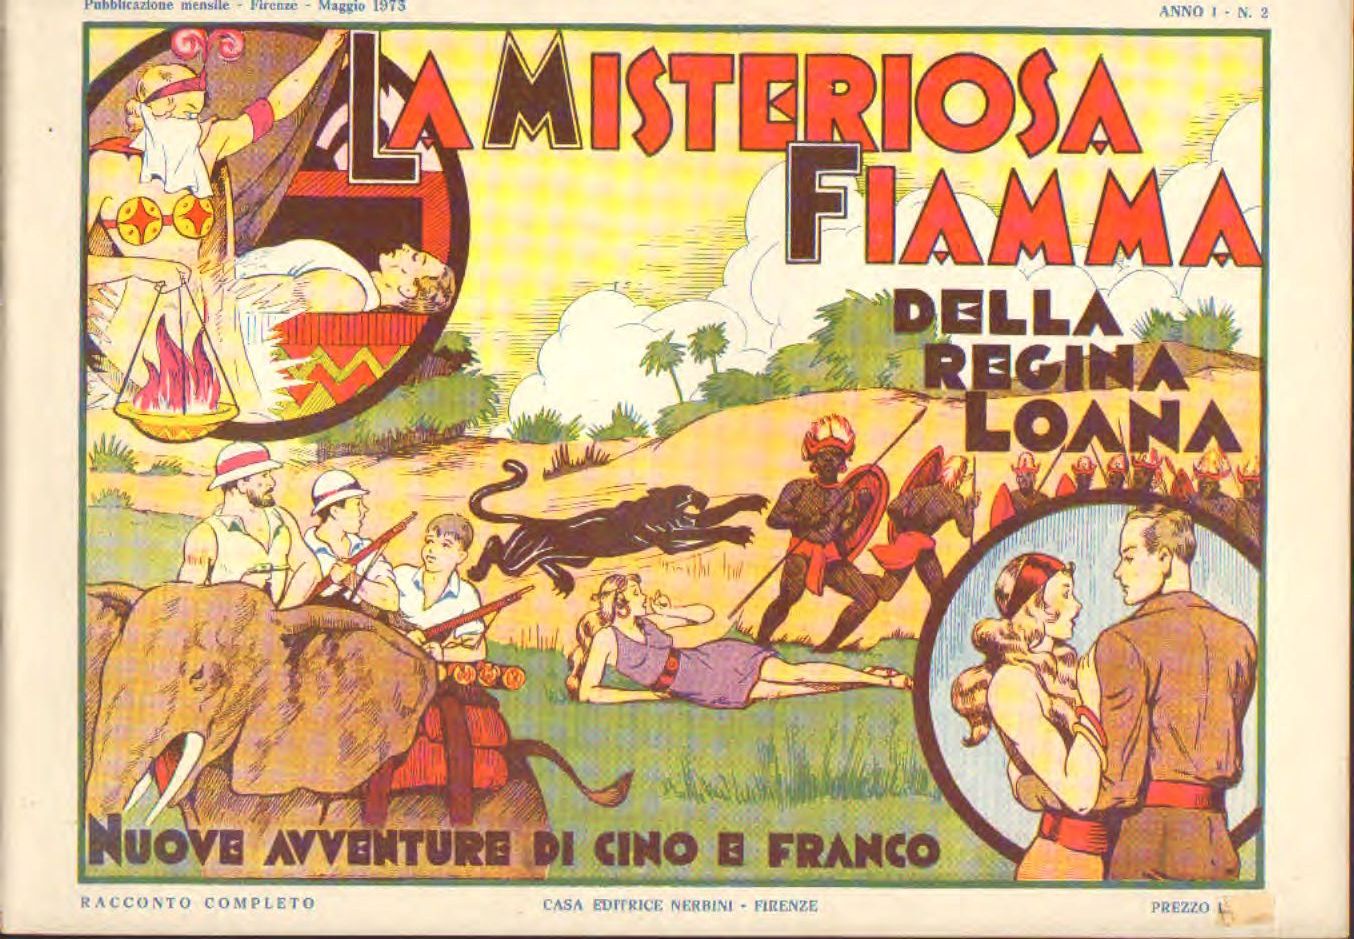 Cino e Franco n. 2 Misteriosa fiamma della regina Loana